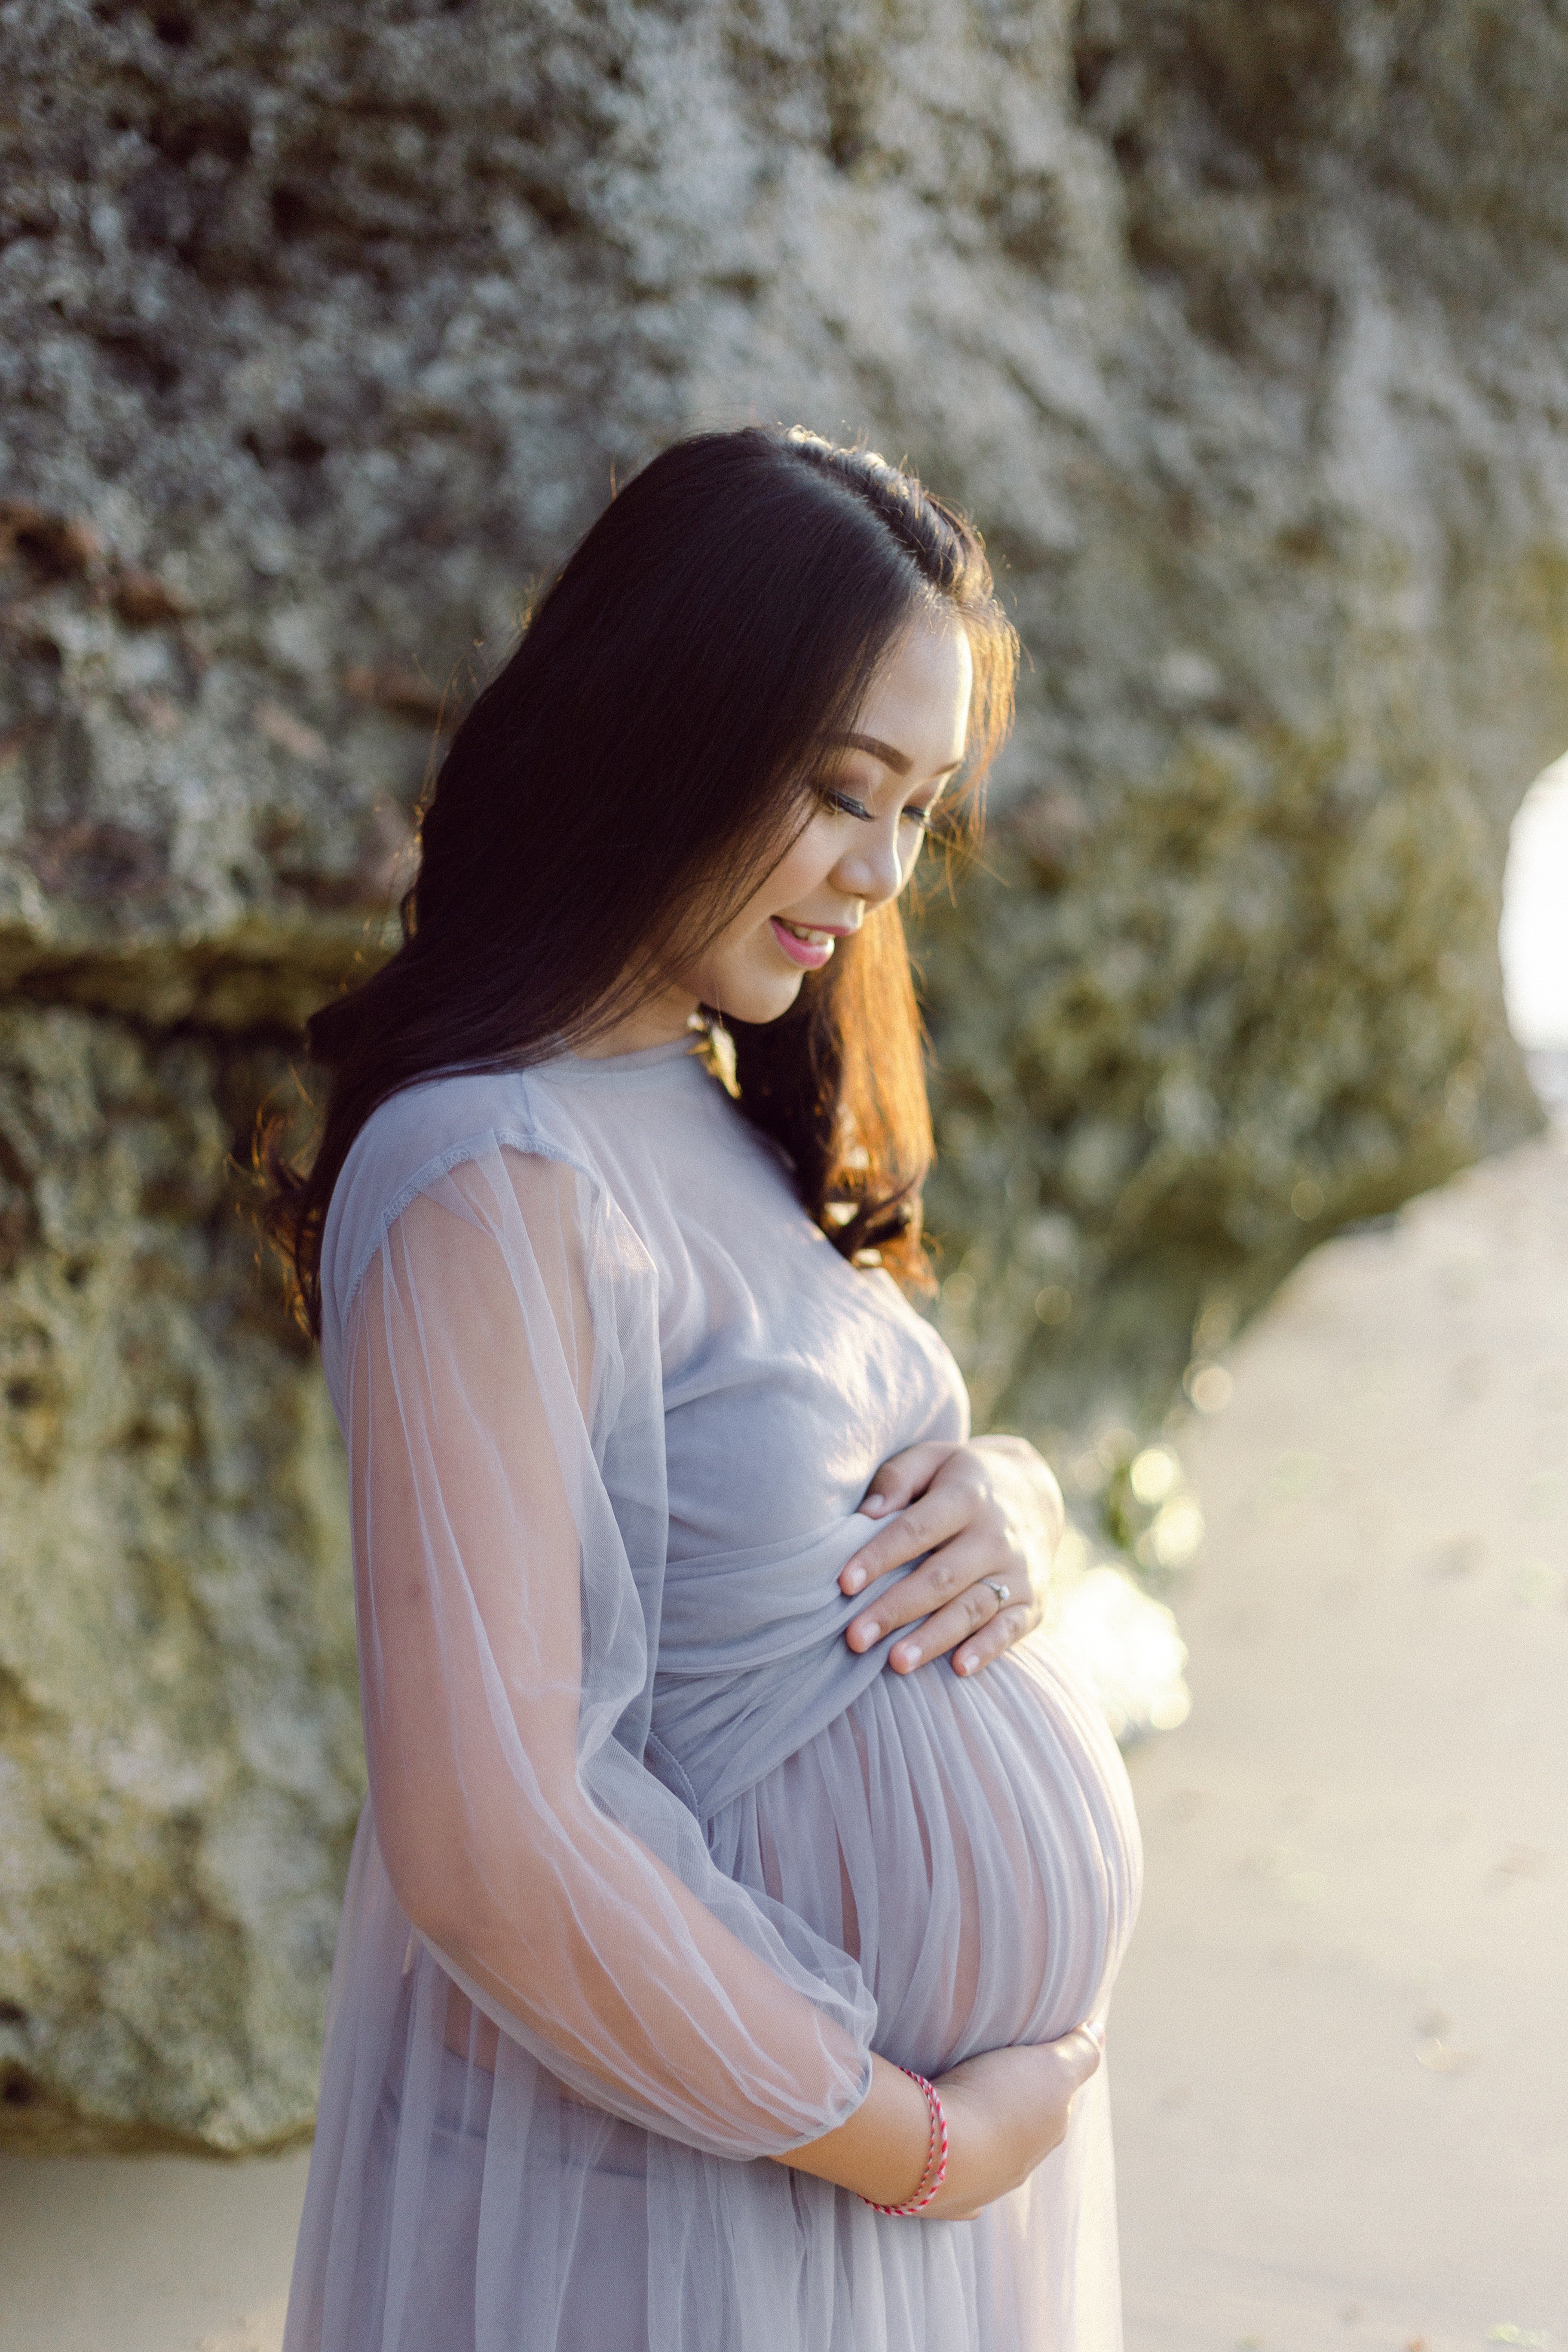 Une femme enceinte portant une robe violette. | Source : Pexels